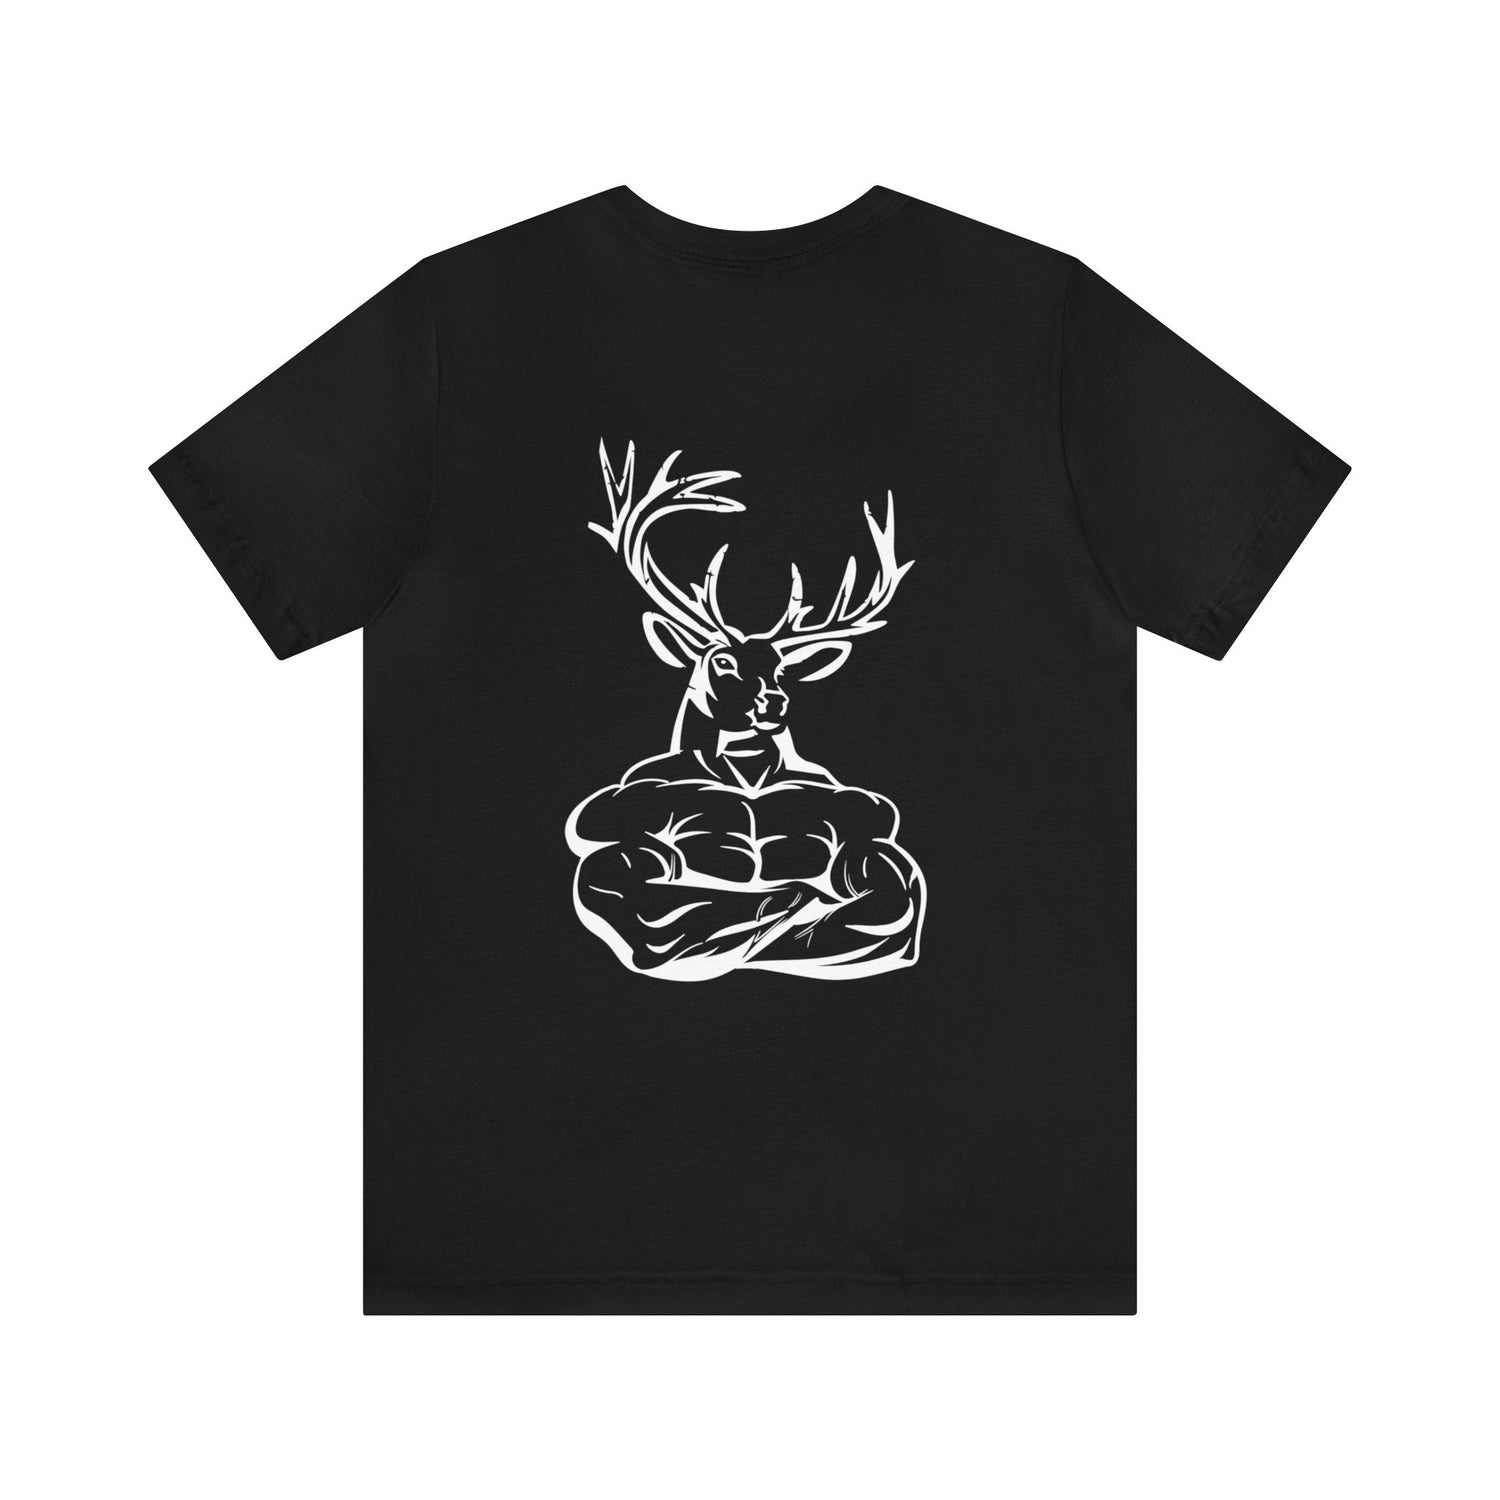 Western deer hunting t-shirt, color black, back design placement